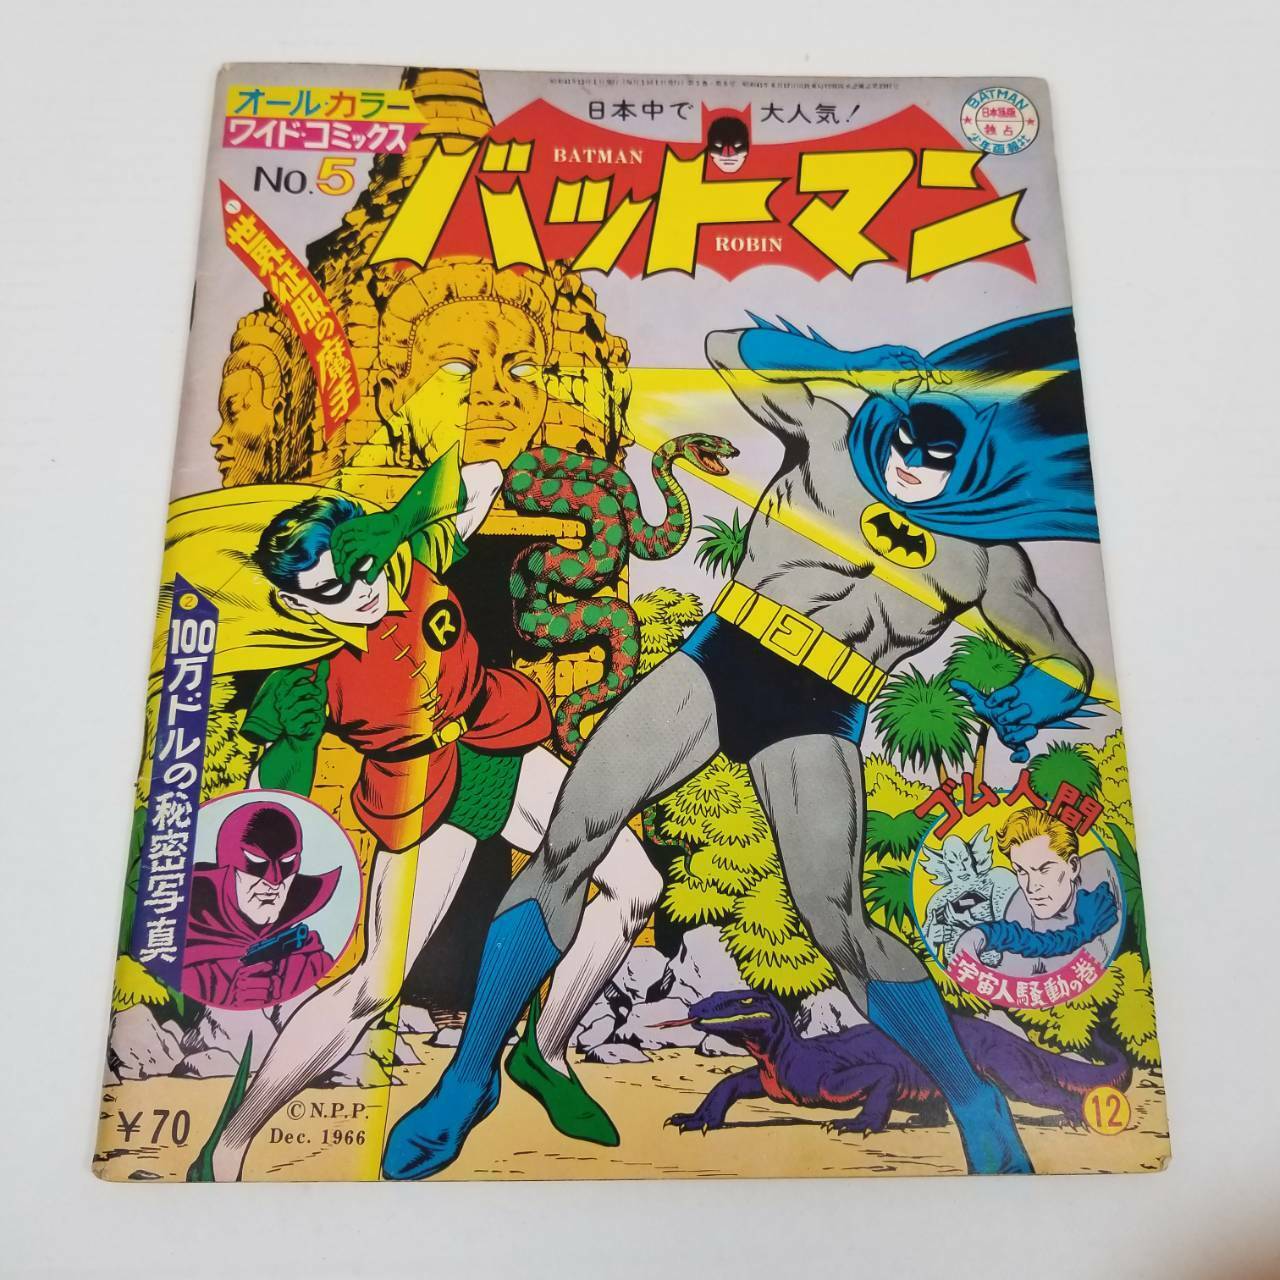 1966 Batman All Color Wide Comics No.5 Shonen Gahosha, Published December Japan